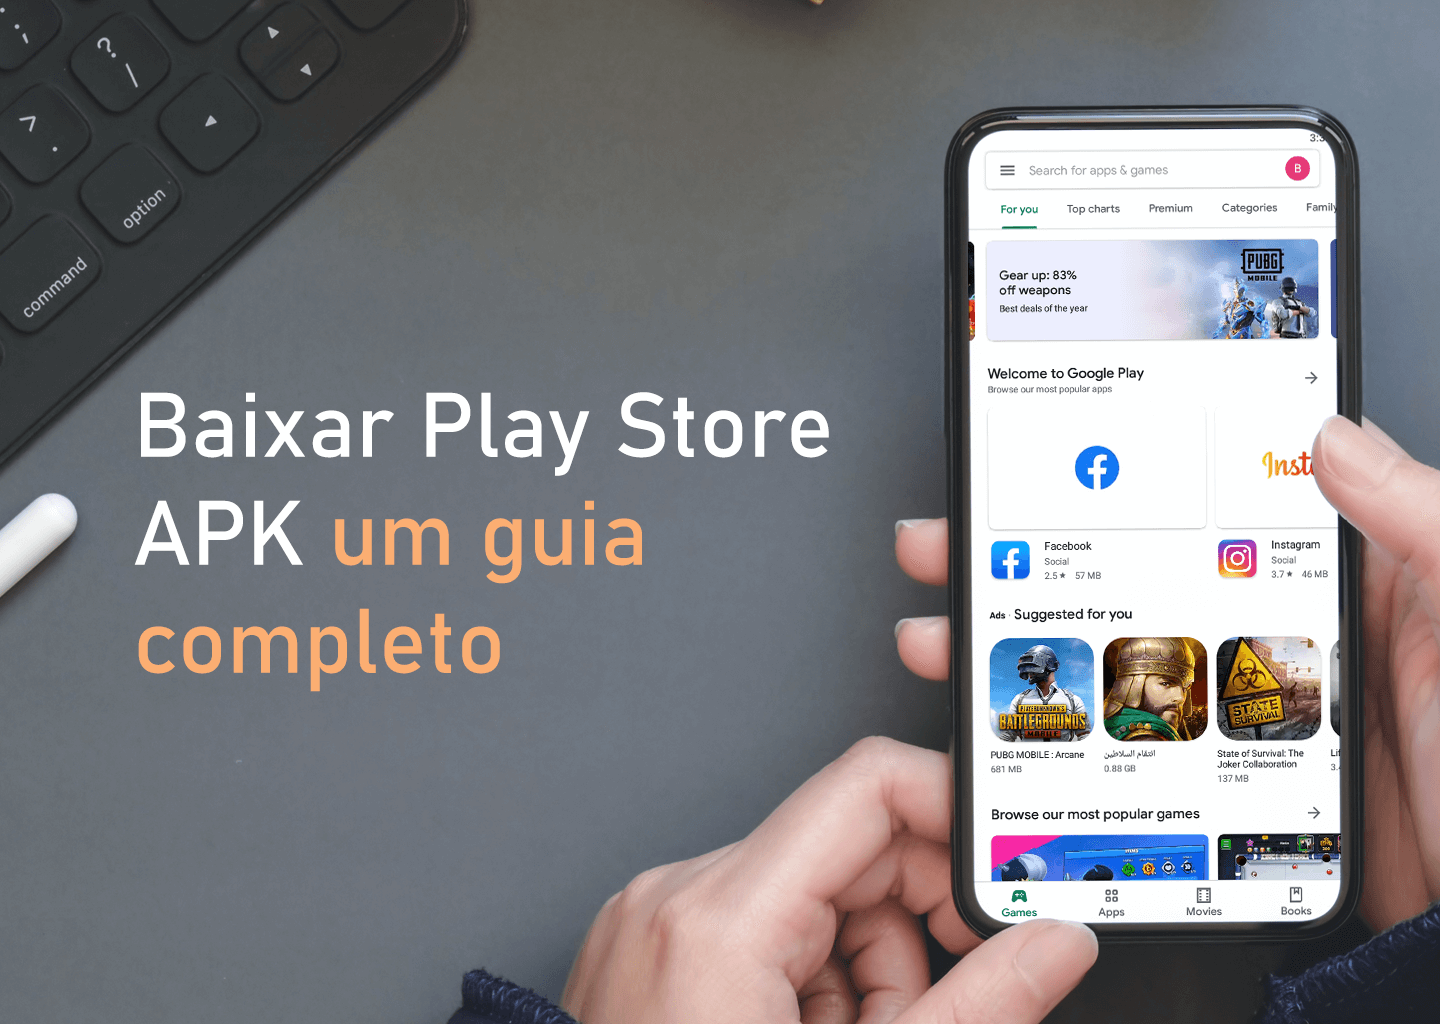 Baixar Play Store 38.8.21-21 APK um guia completo - DivxLand